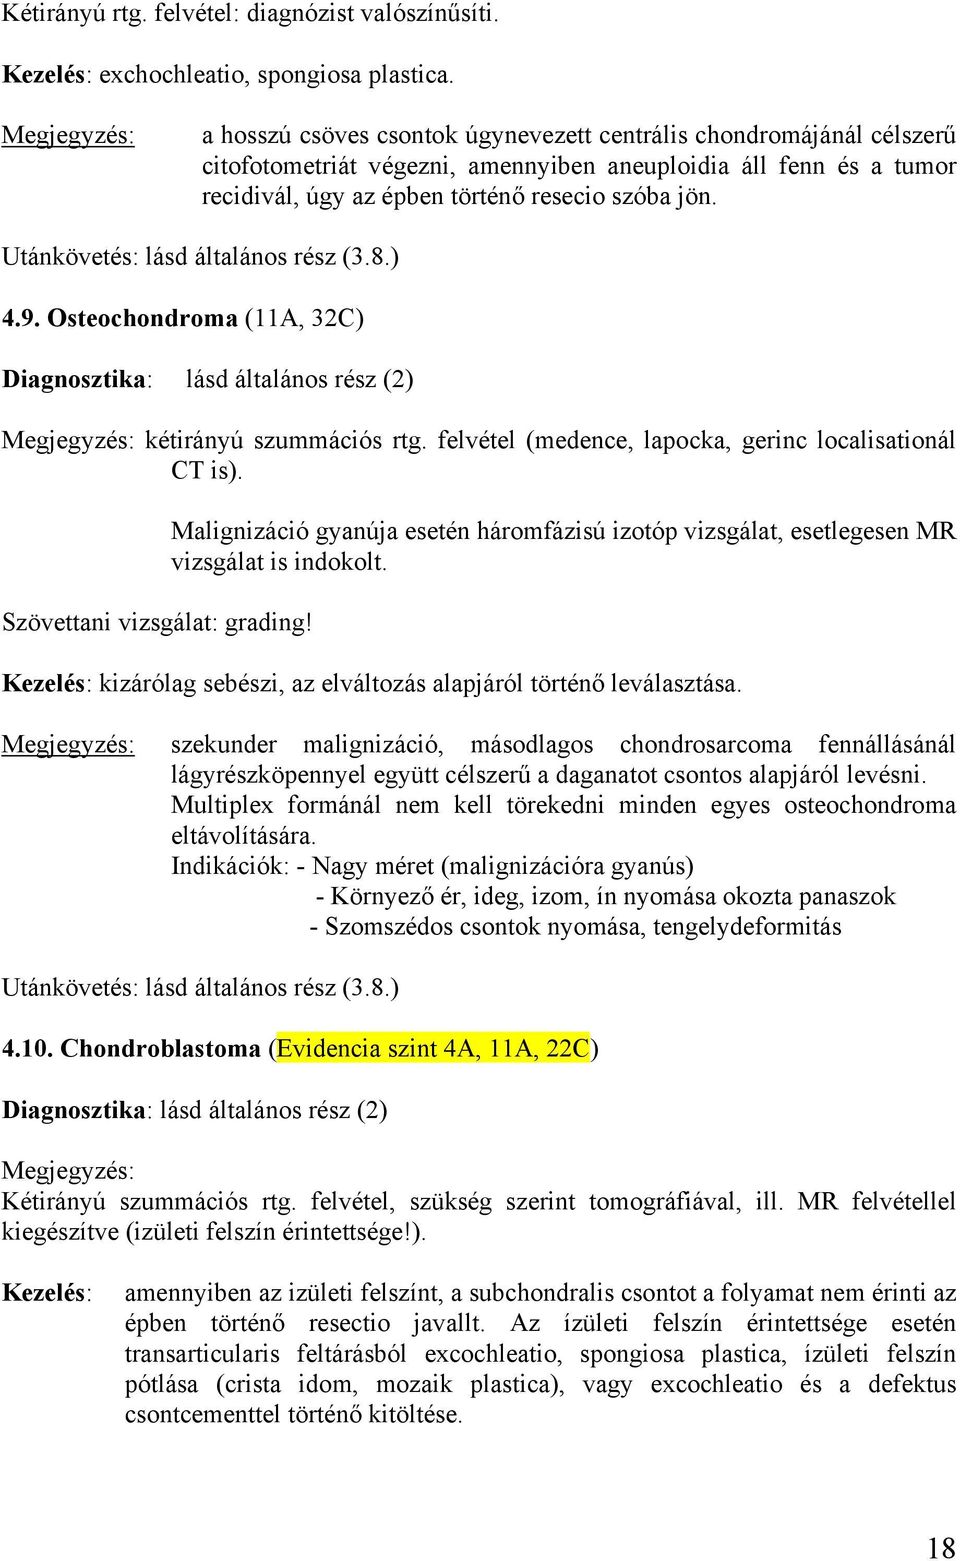 Osteochondroma (11A, 32C) kétirányú szummációs rtg. felvétel (medence, lapocka, gerinc localisationál CT is). Szövettani vizsgálat: grading!